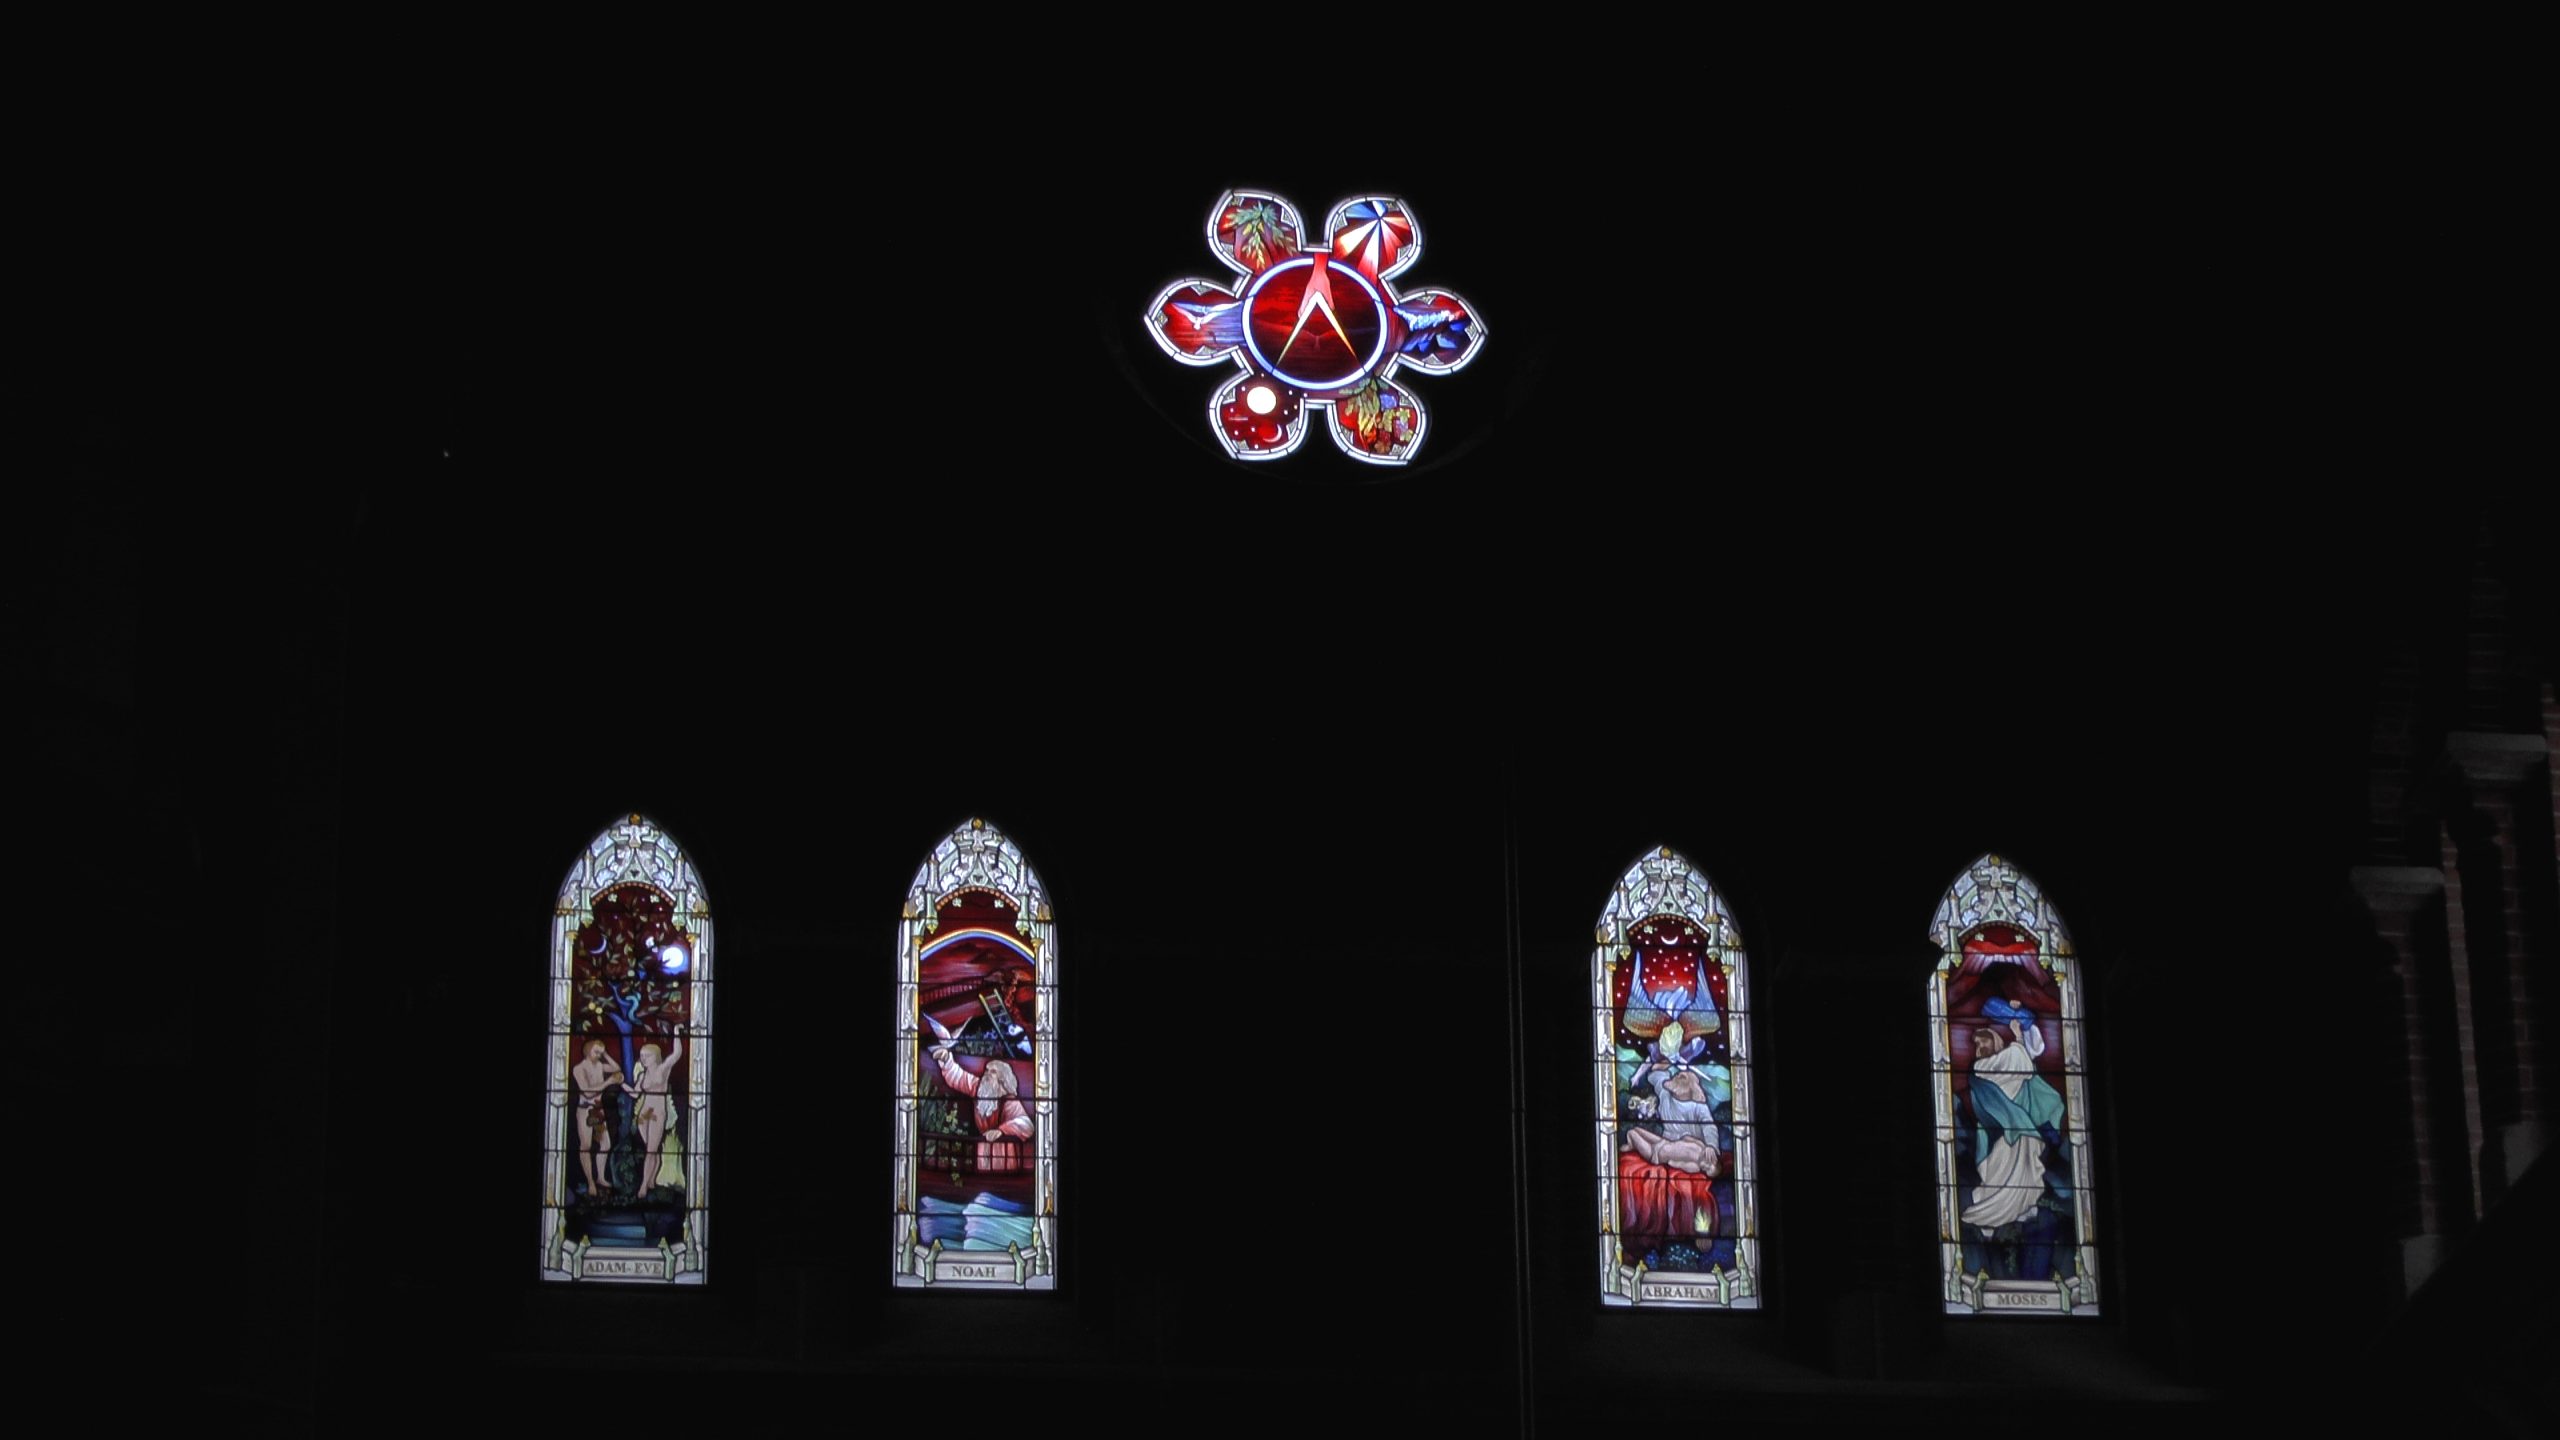 Holy Trinity Church Choir and Transept Windows